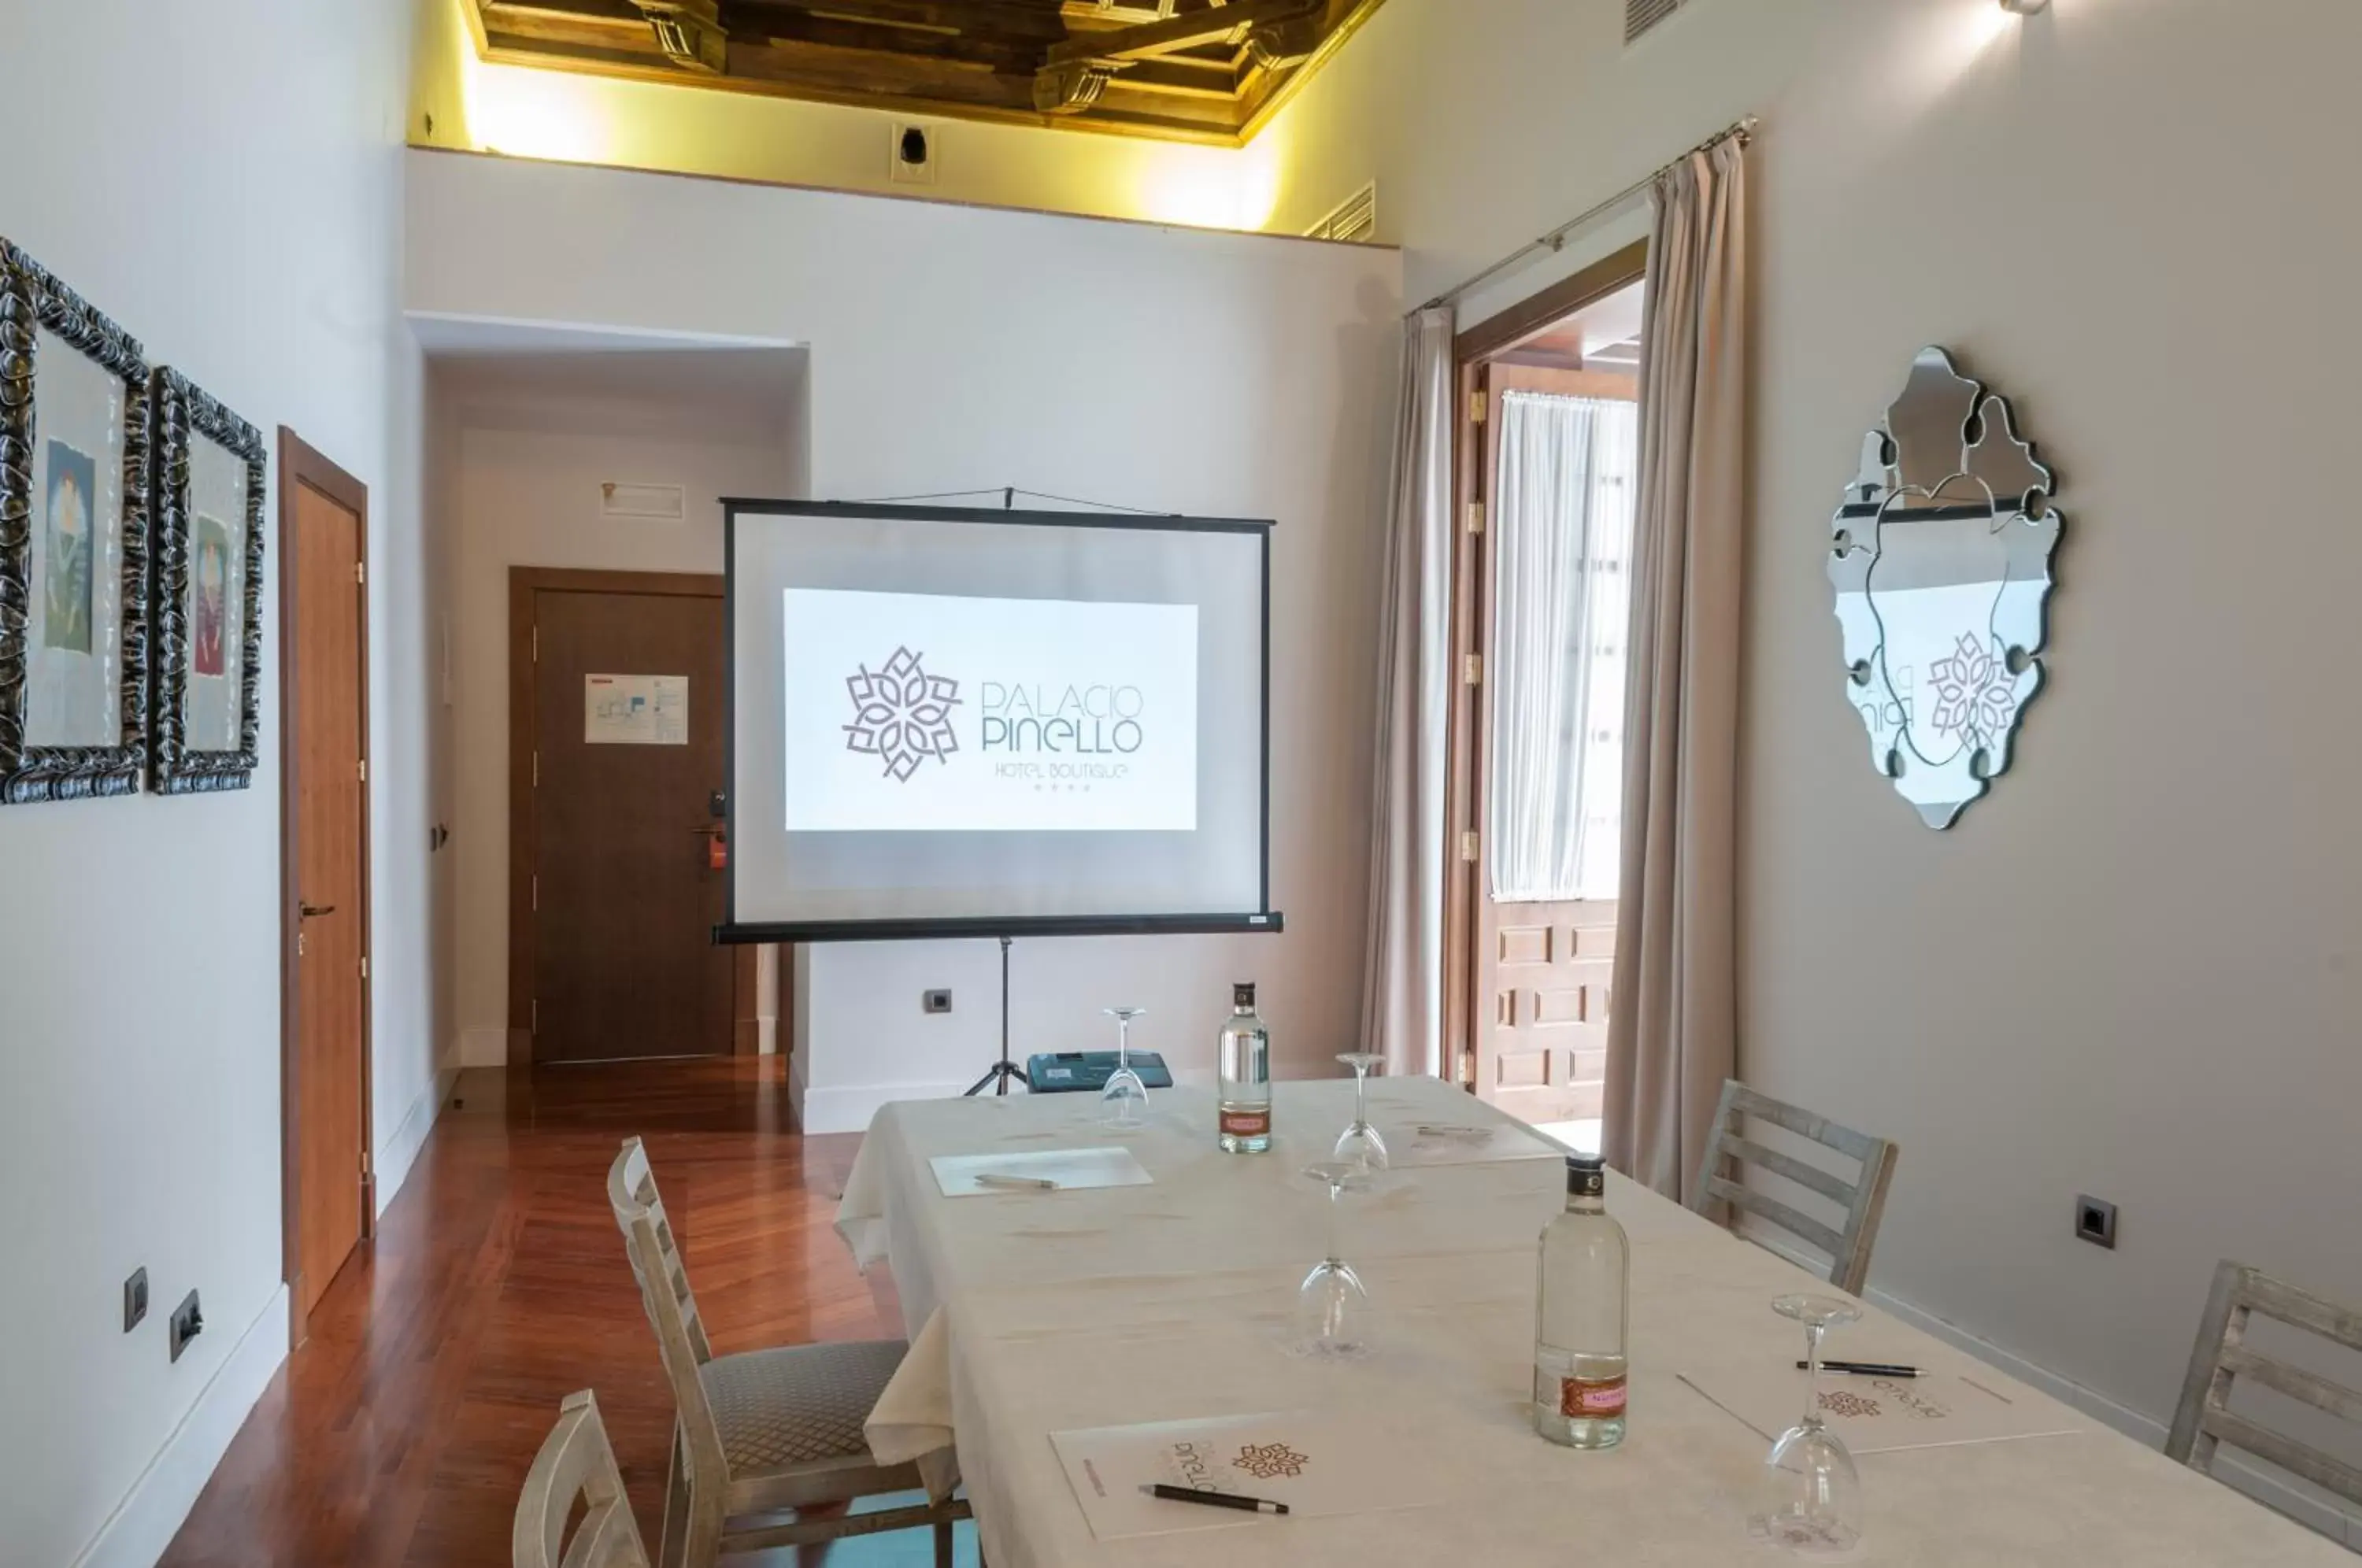 Banquet/Function facilities in Palacio Pinello